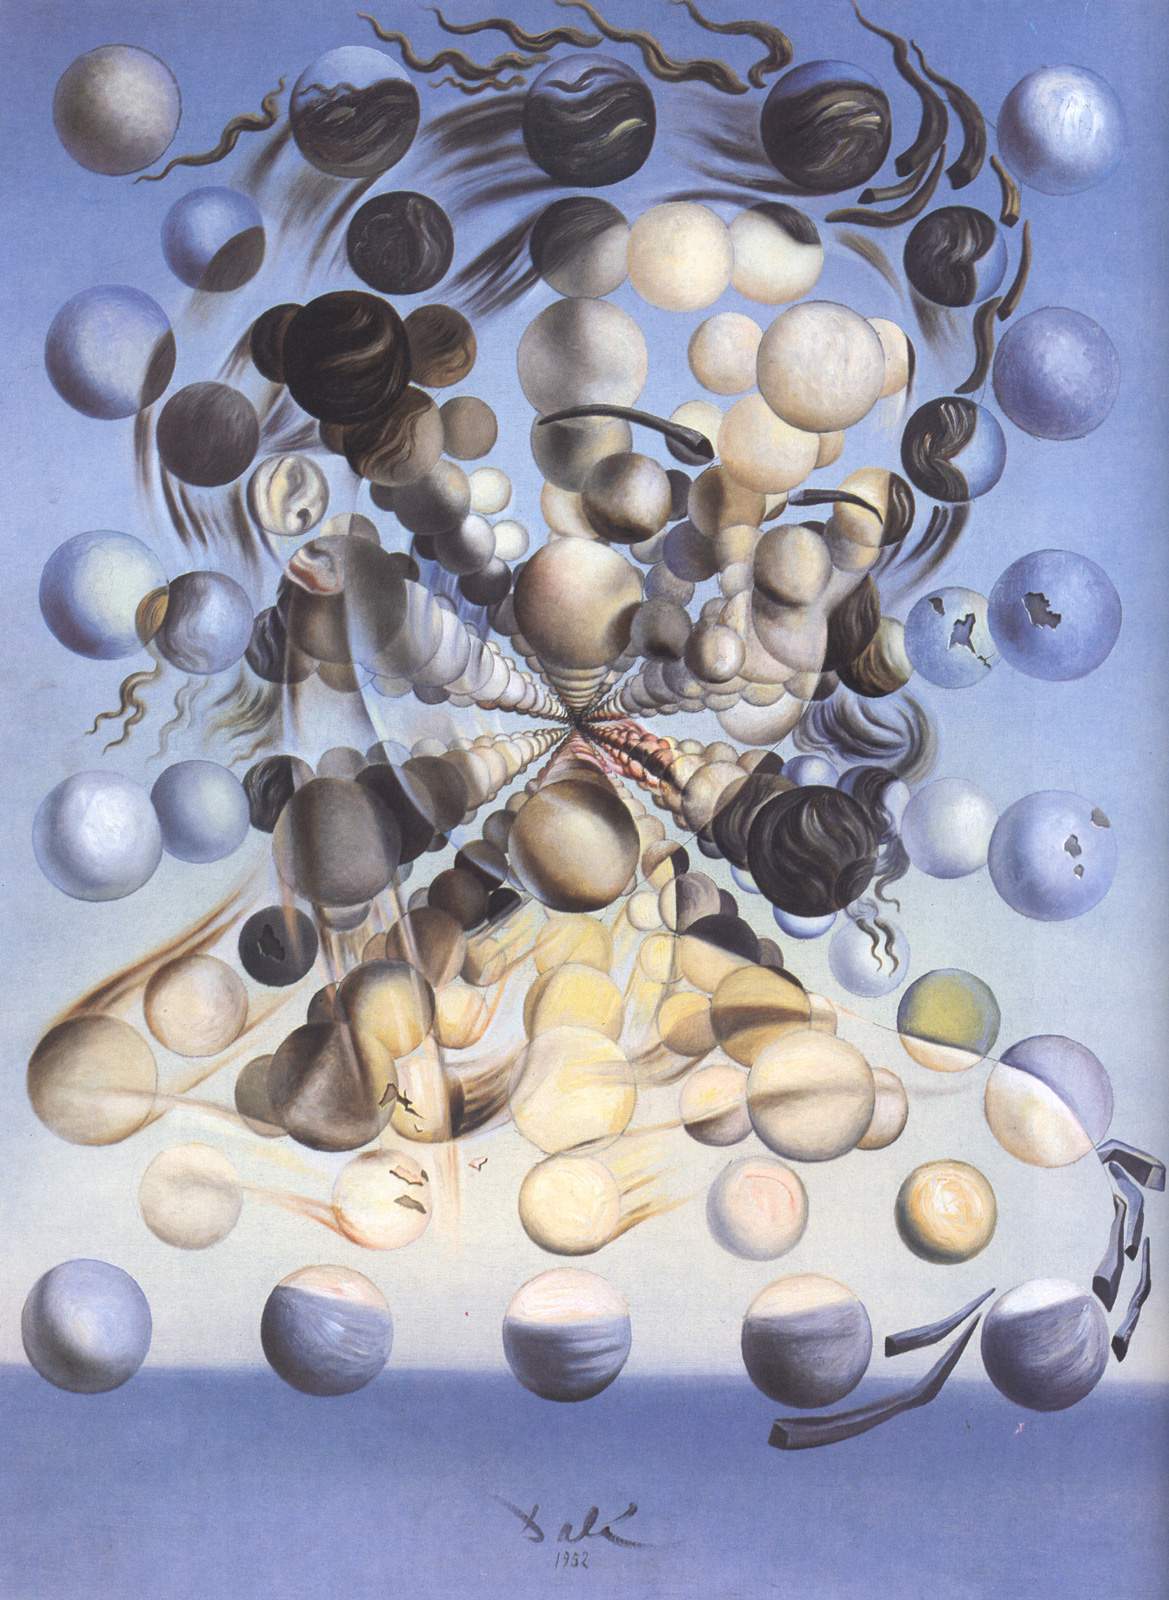 Salvador Dalí: vita e opere del padre del surrealismo paranoico-critico